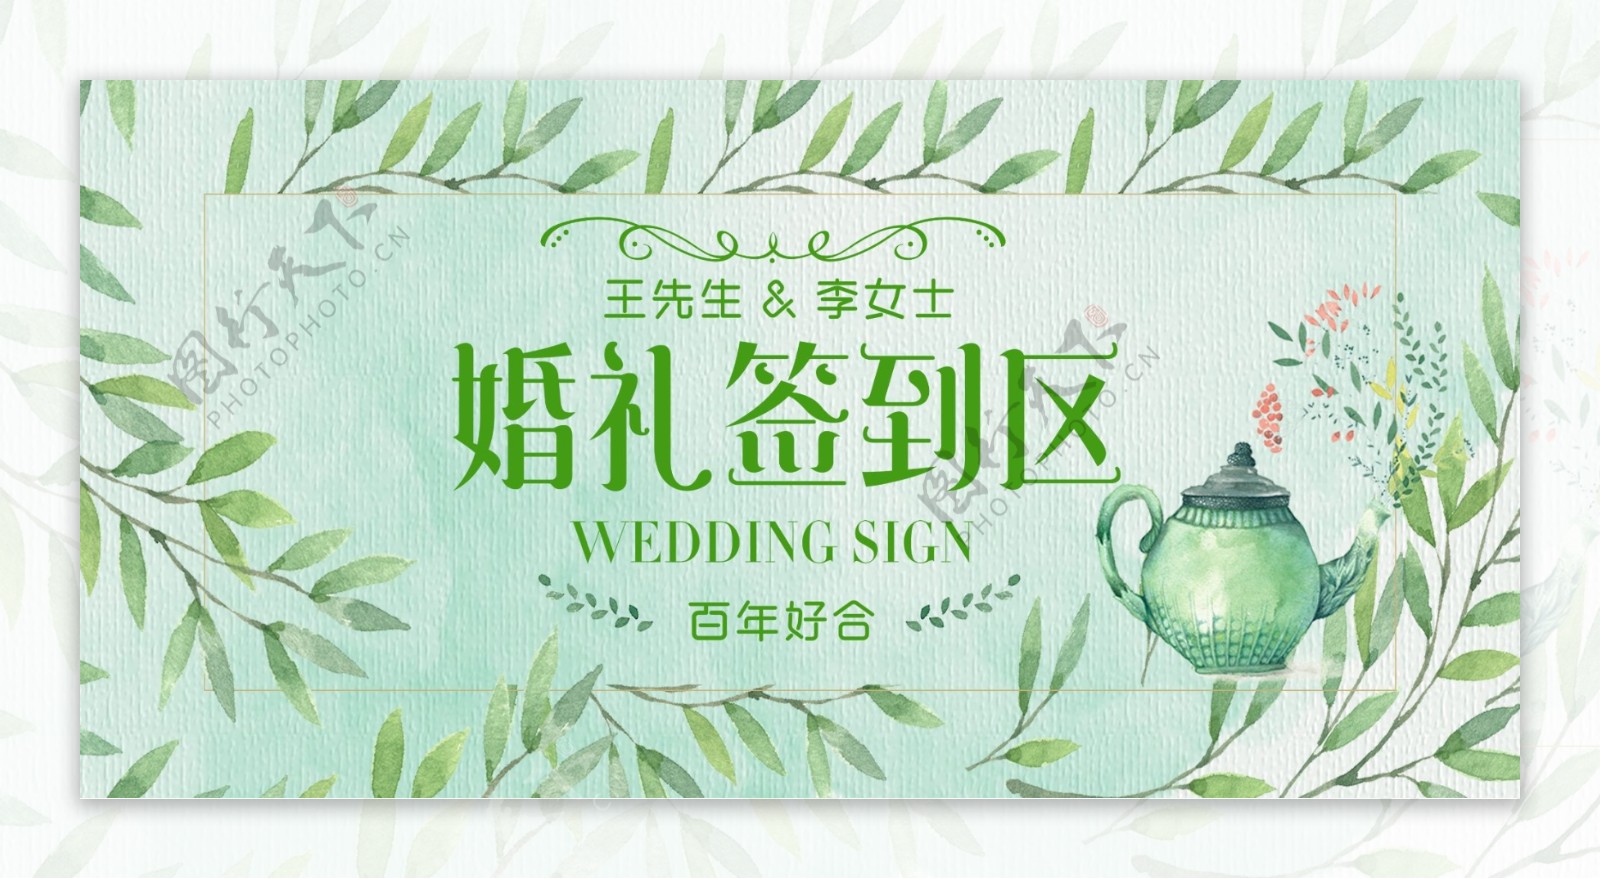 小清新唯美婚礼签到处婚庆展板